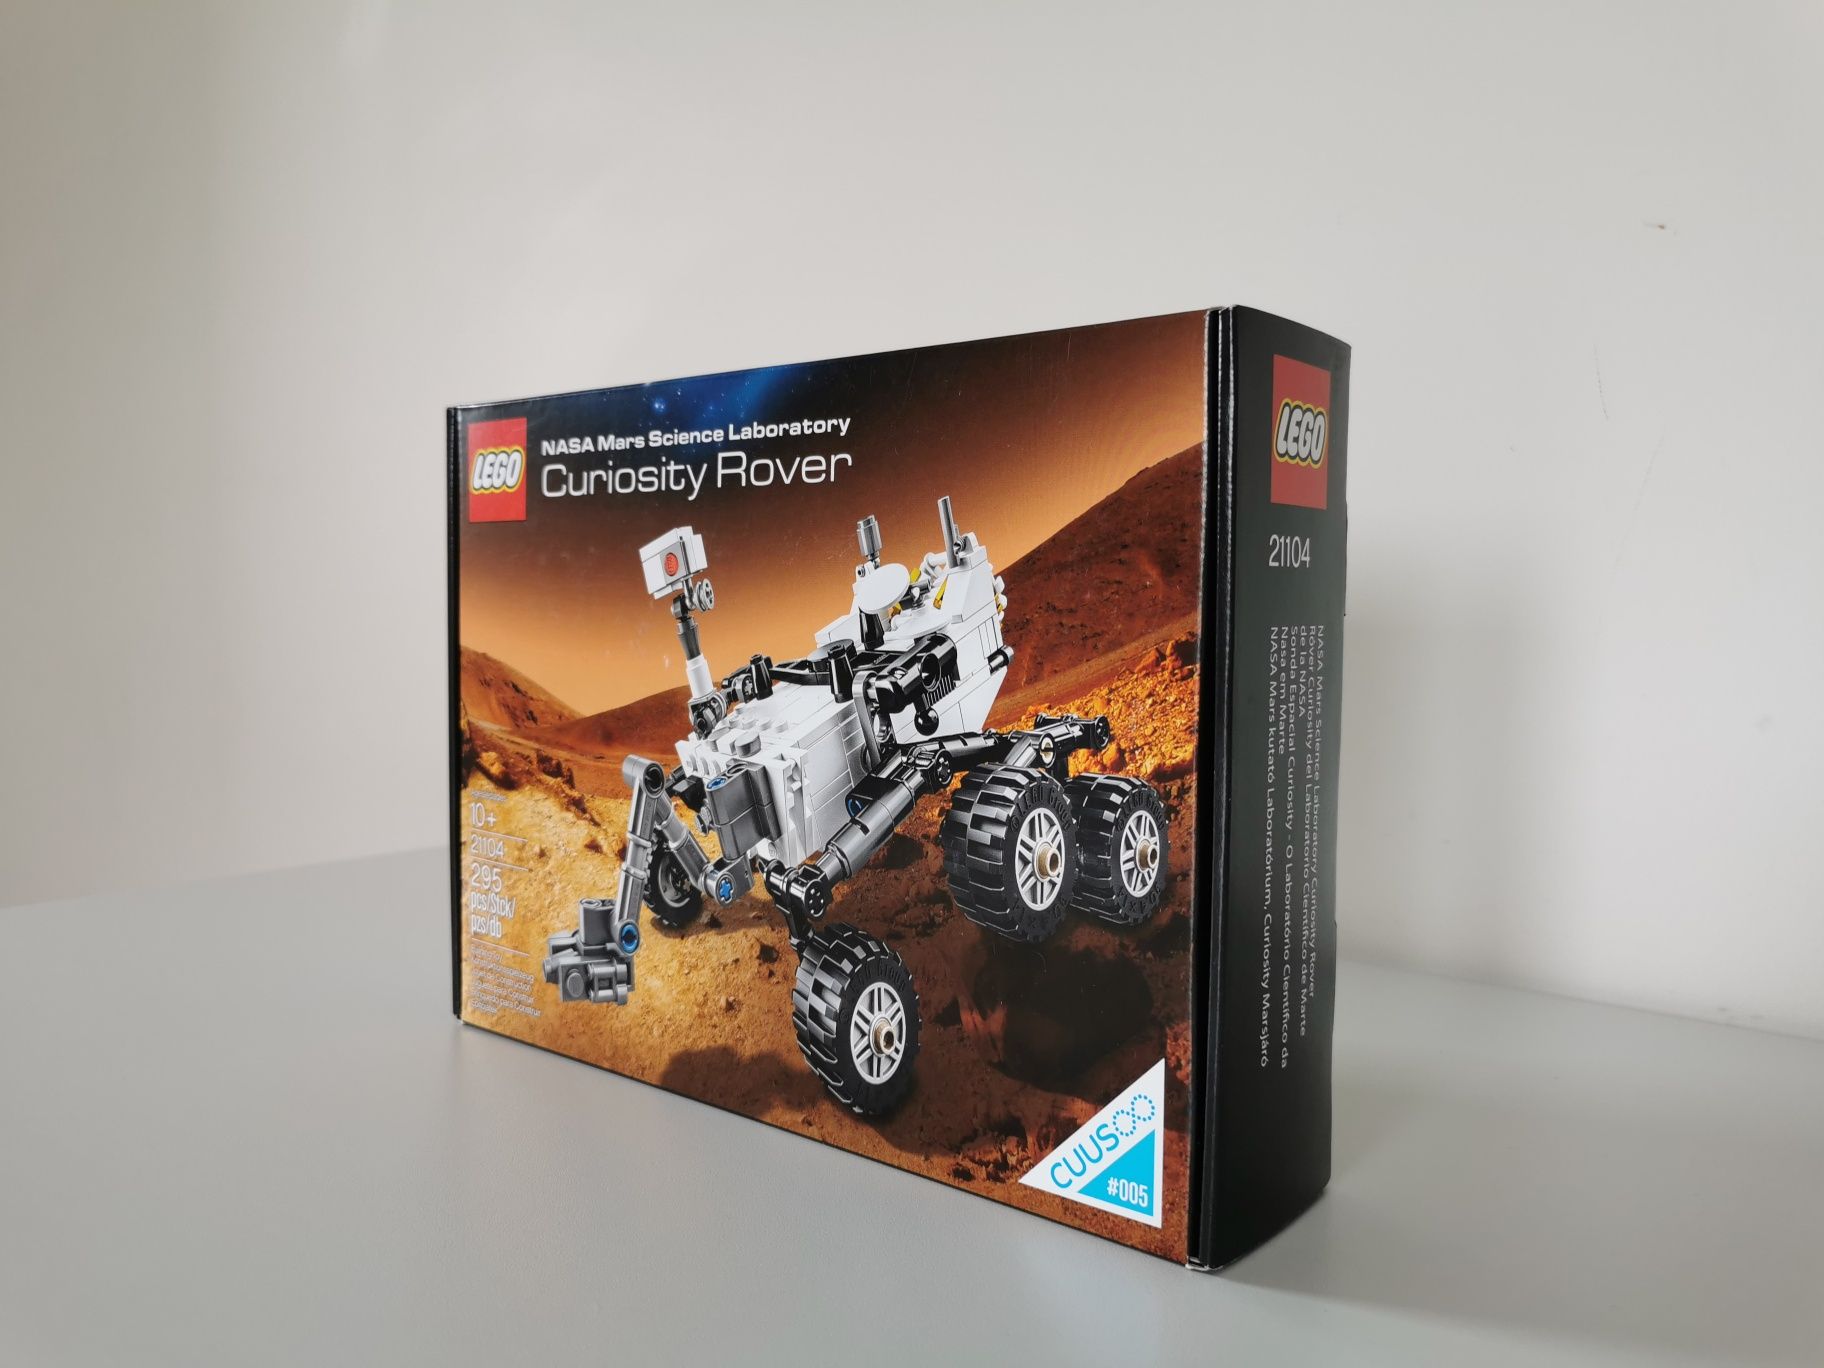 Lego Ideas 21104 Curiosity Rover